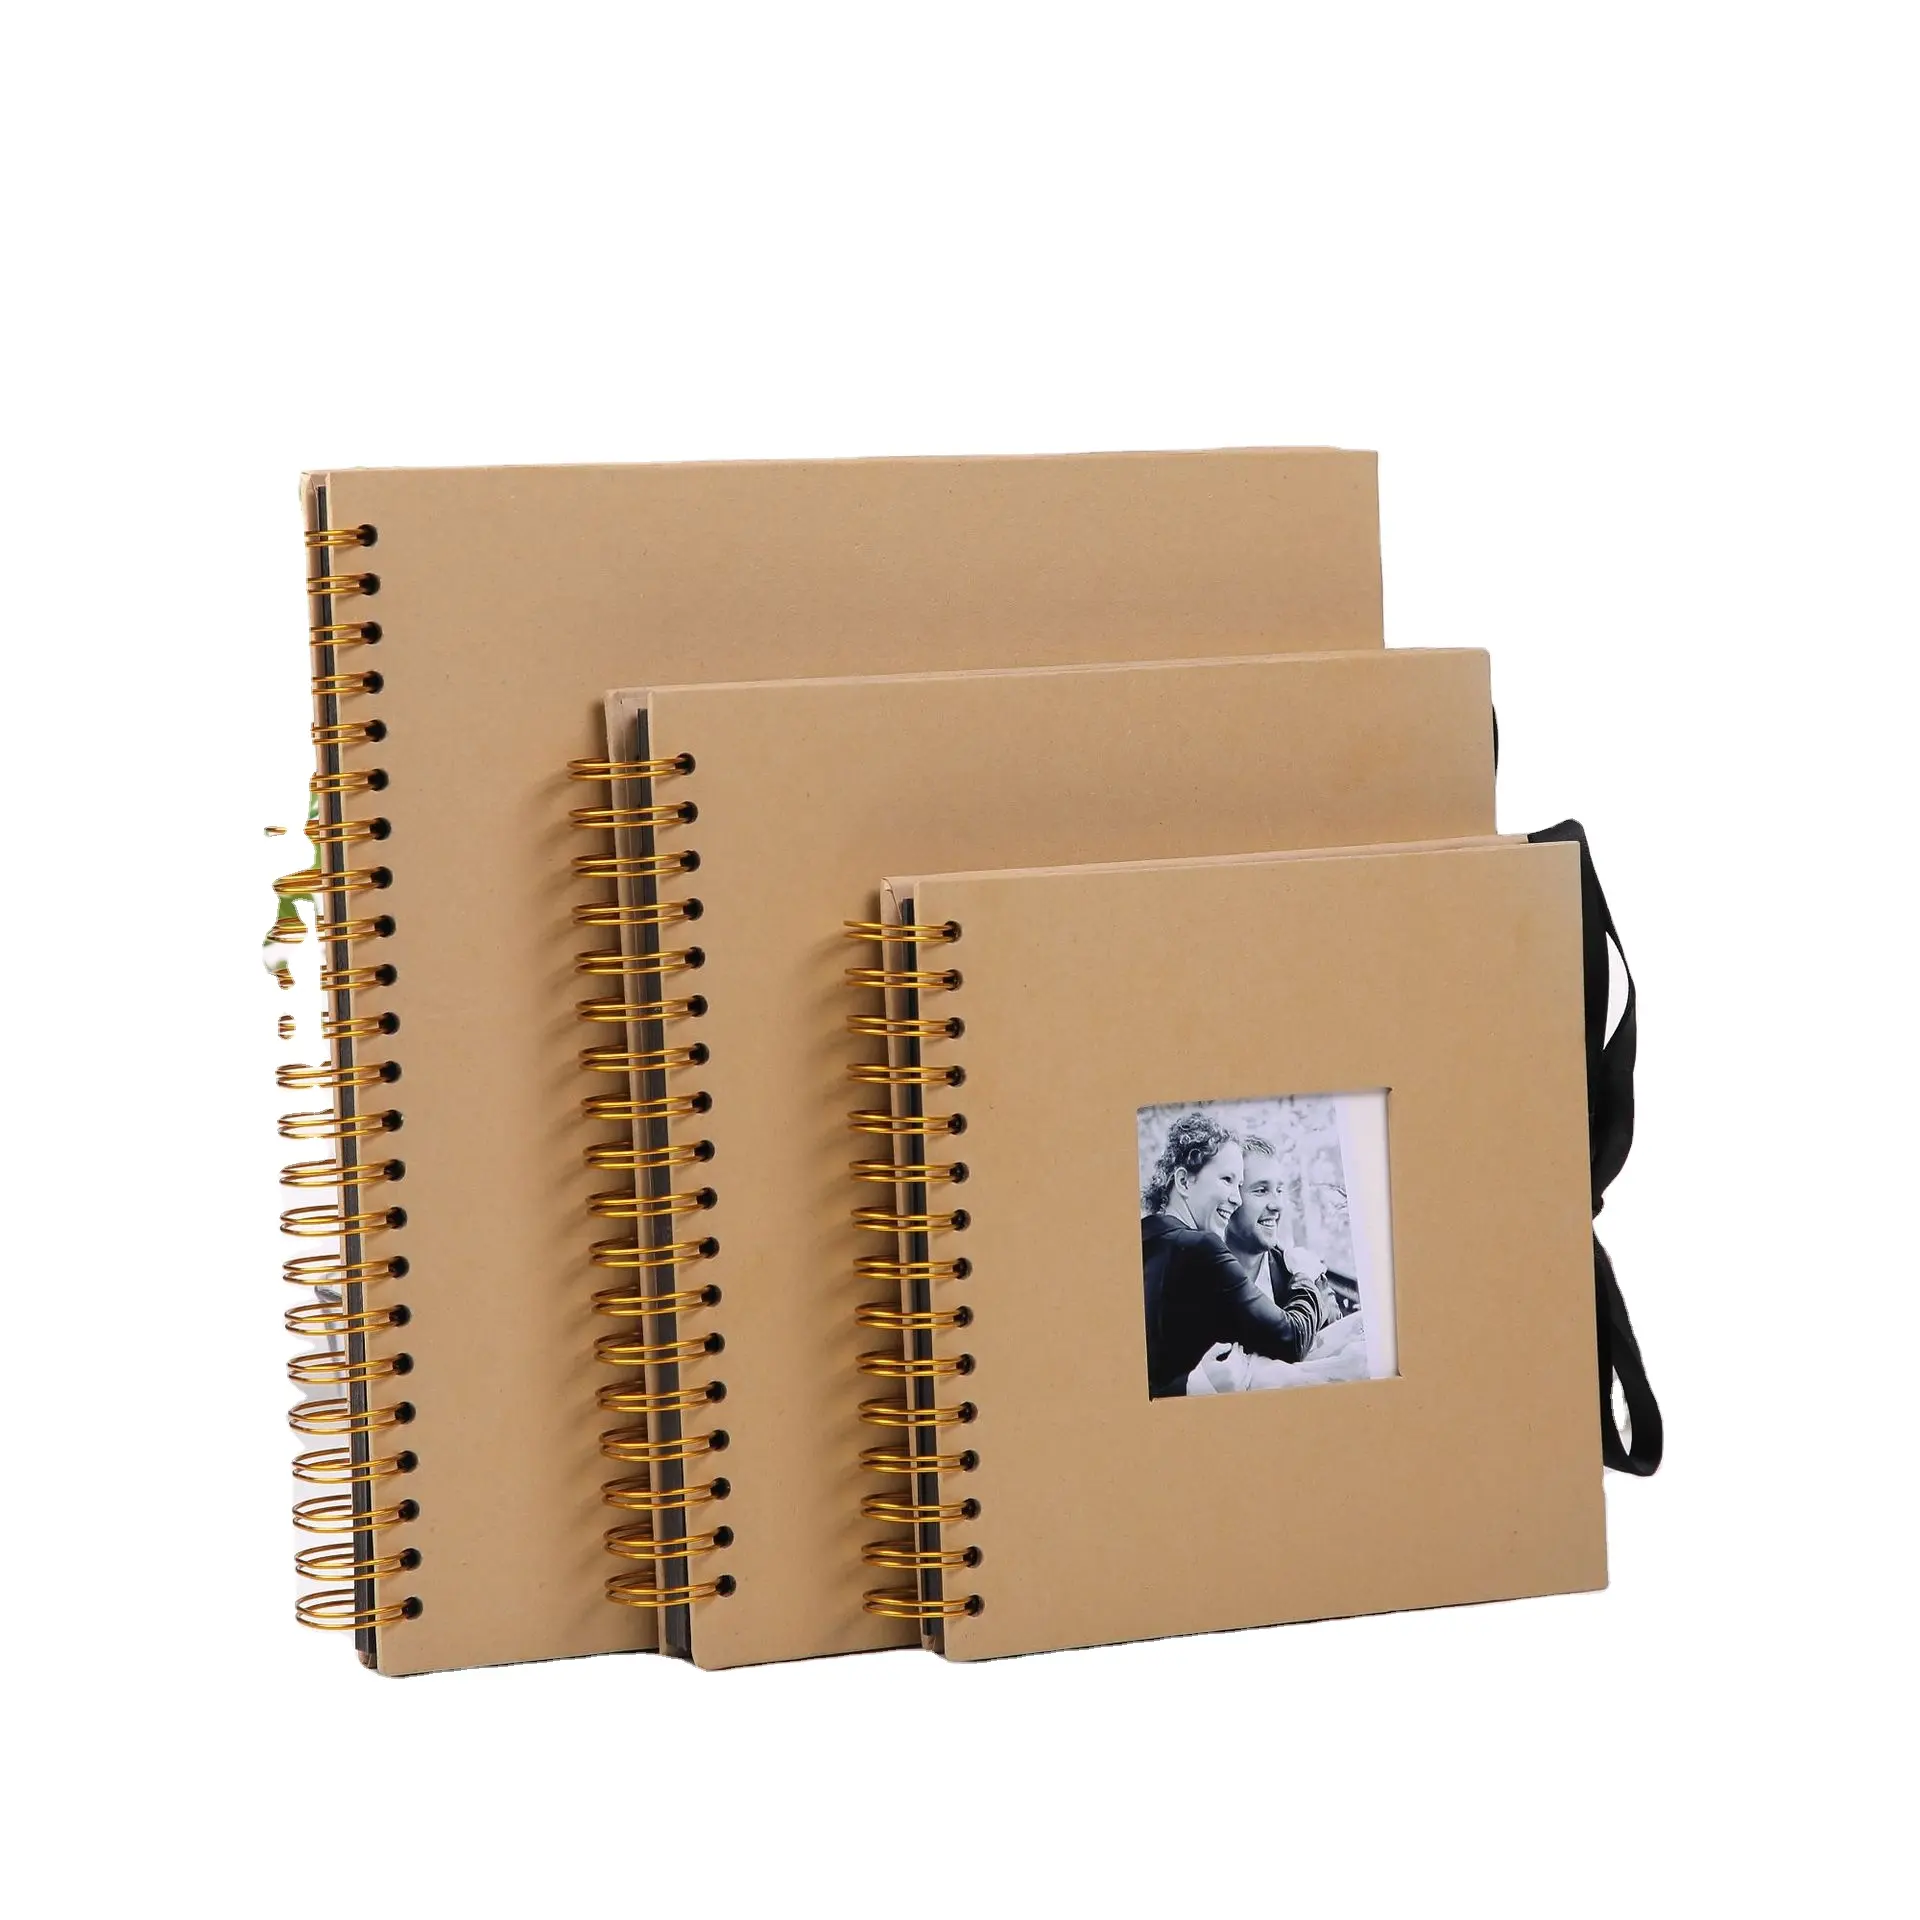 Álbuns de fotos de paperboard em papel, álbuns de fotos de metal espiral para encadernação de bebê